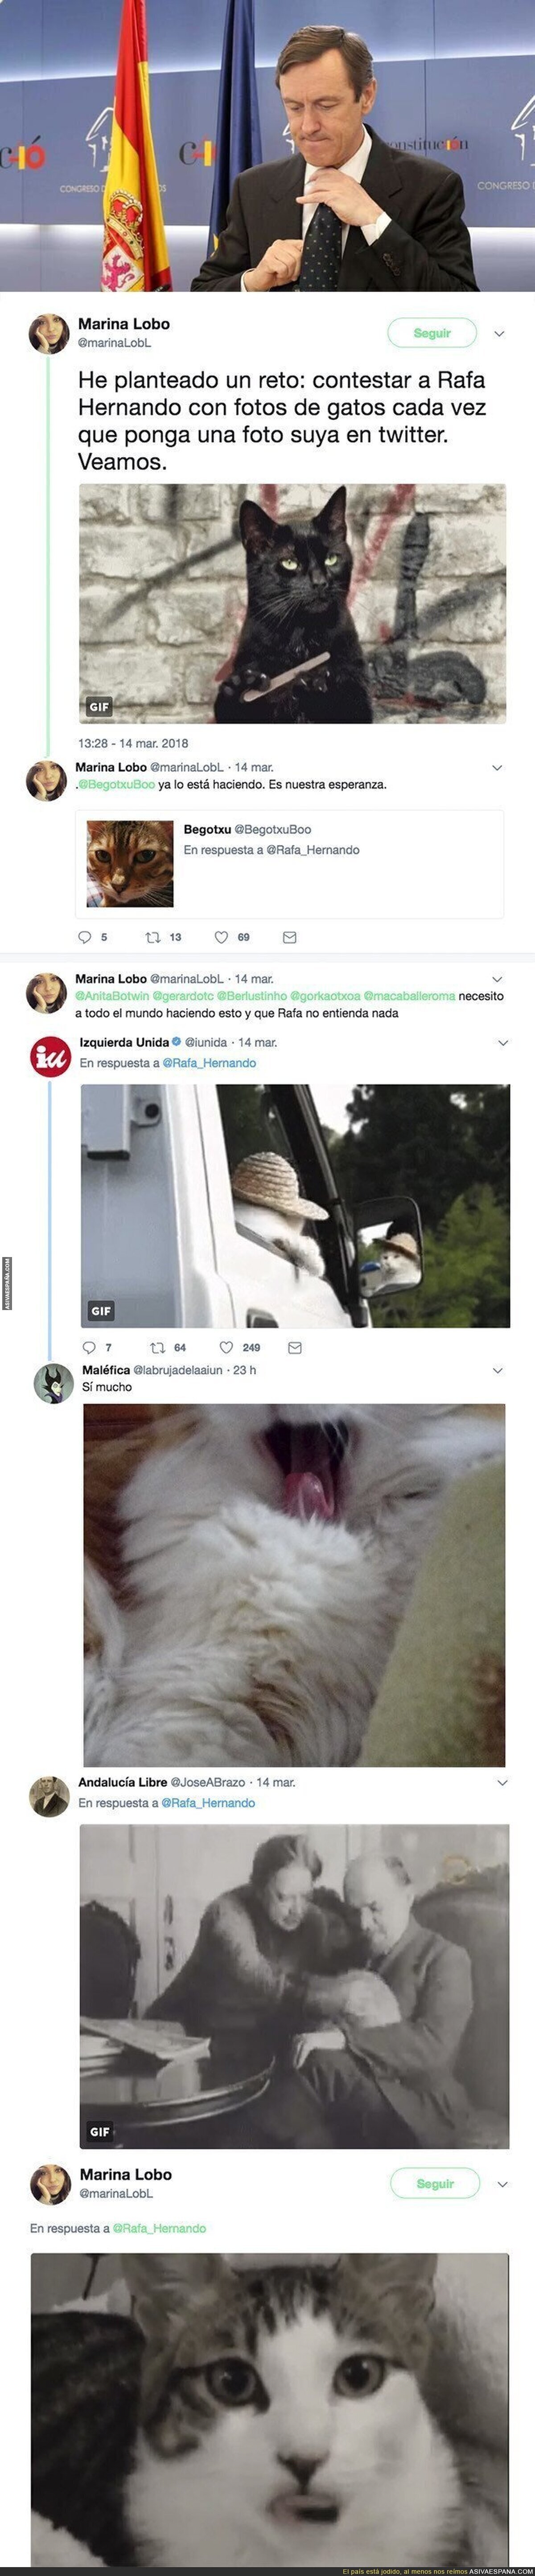 Twitter está troleando épicamente a Rafael Hernando respondiéndole con fotos de gatos